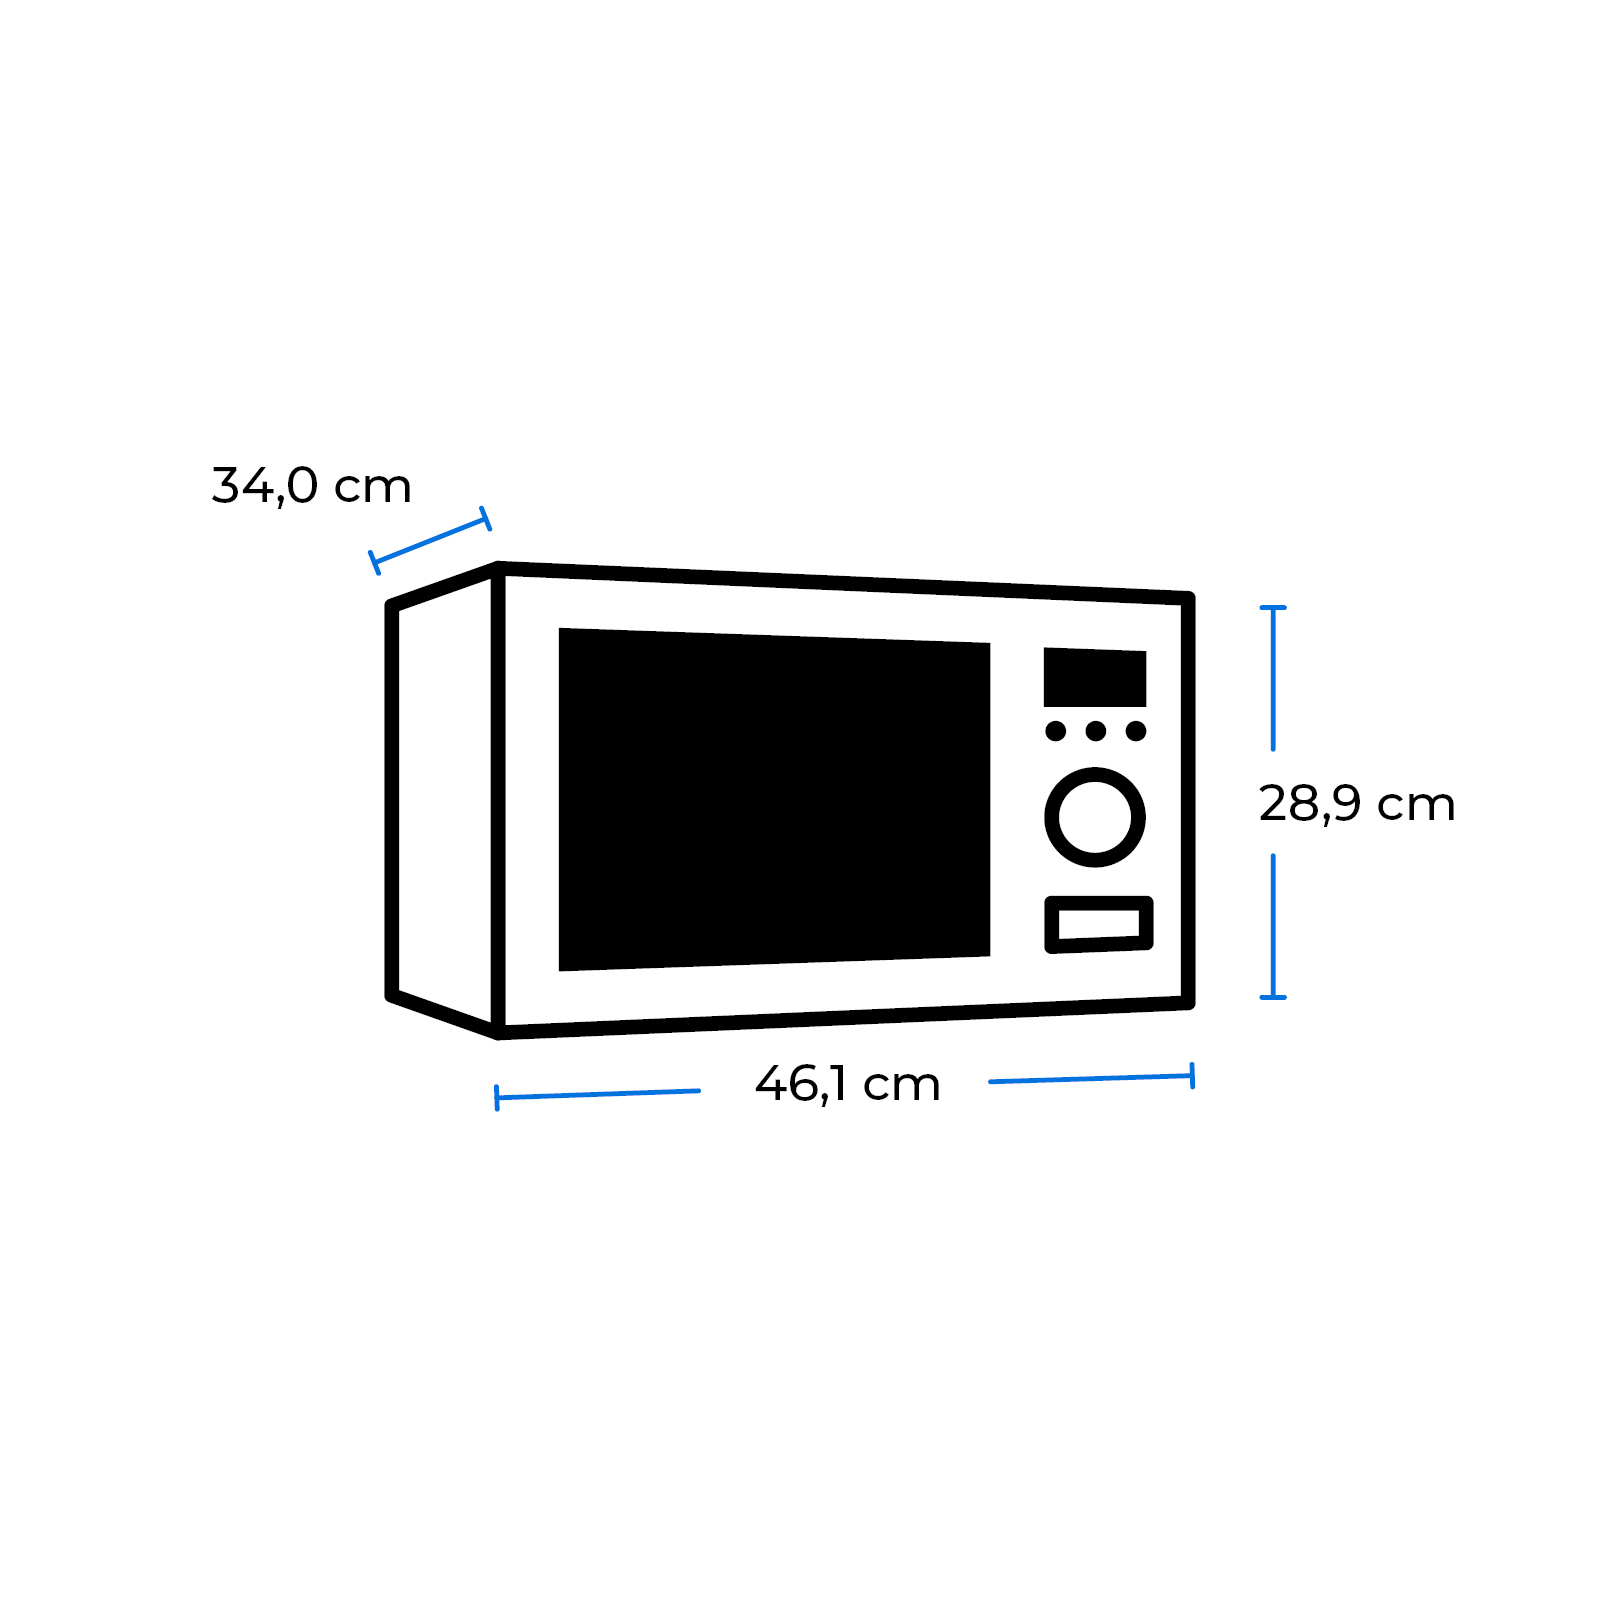 800G-3.1 (800 Mikrowelle UMW Inox Watt) EXQUISIT